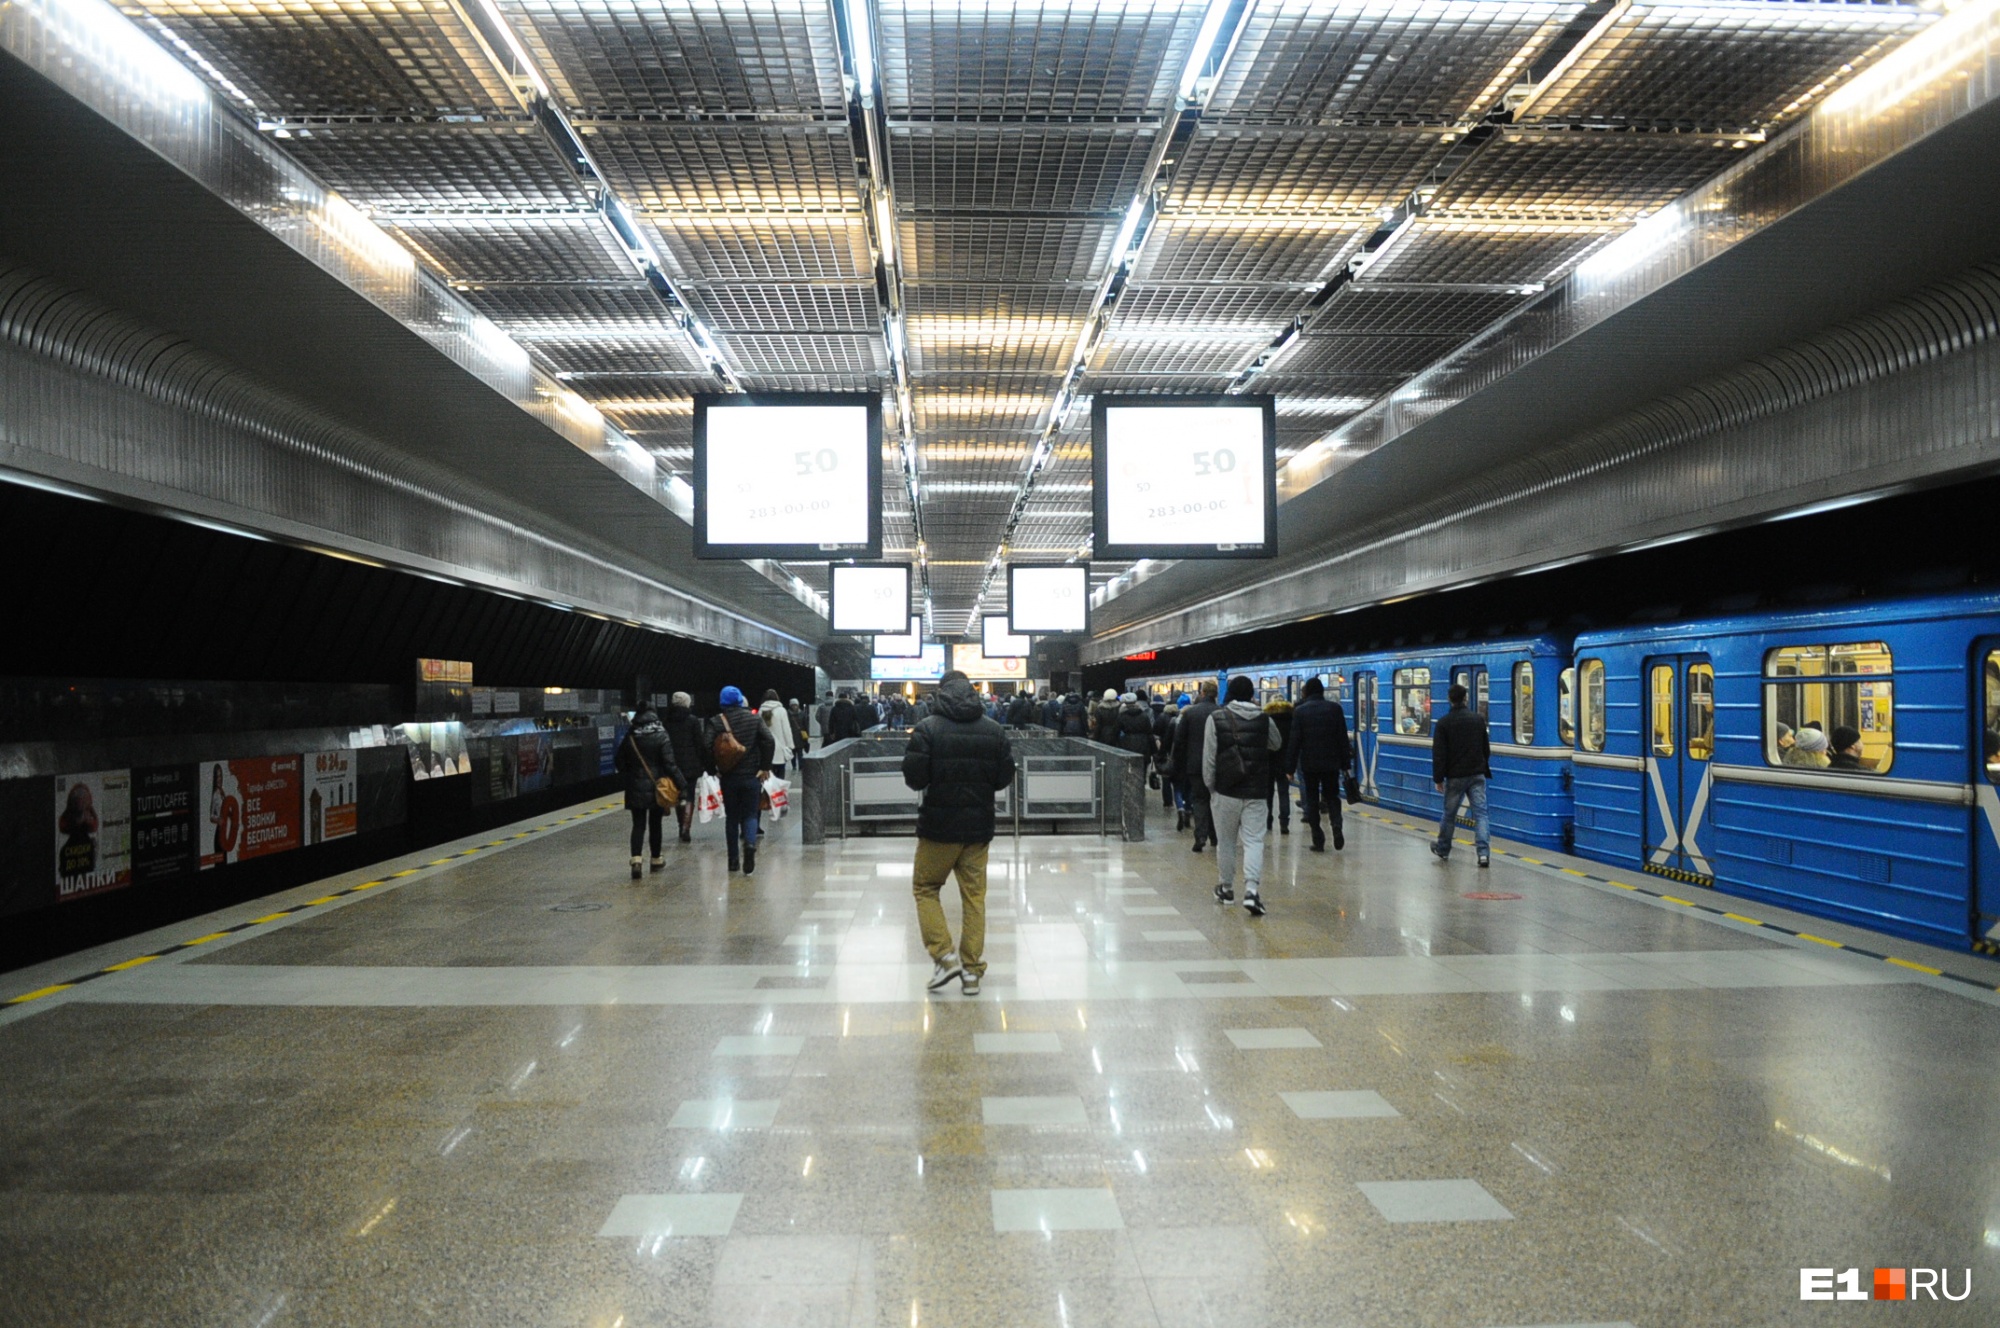 Екатеринбургская компания, сделавшая вестибюль «Геологической», займётся недостроенным метро в Челябинске